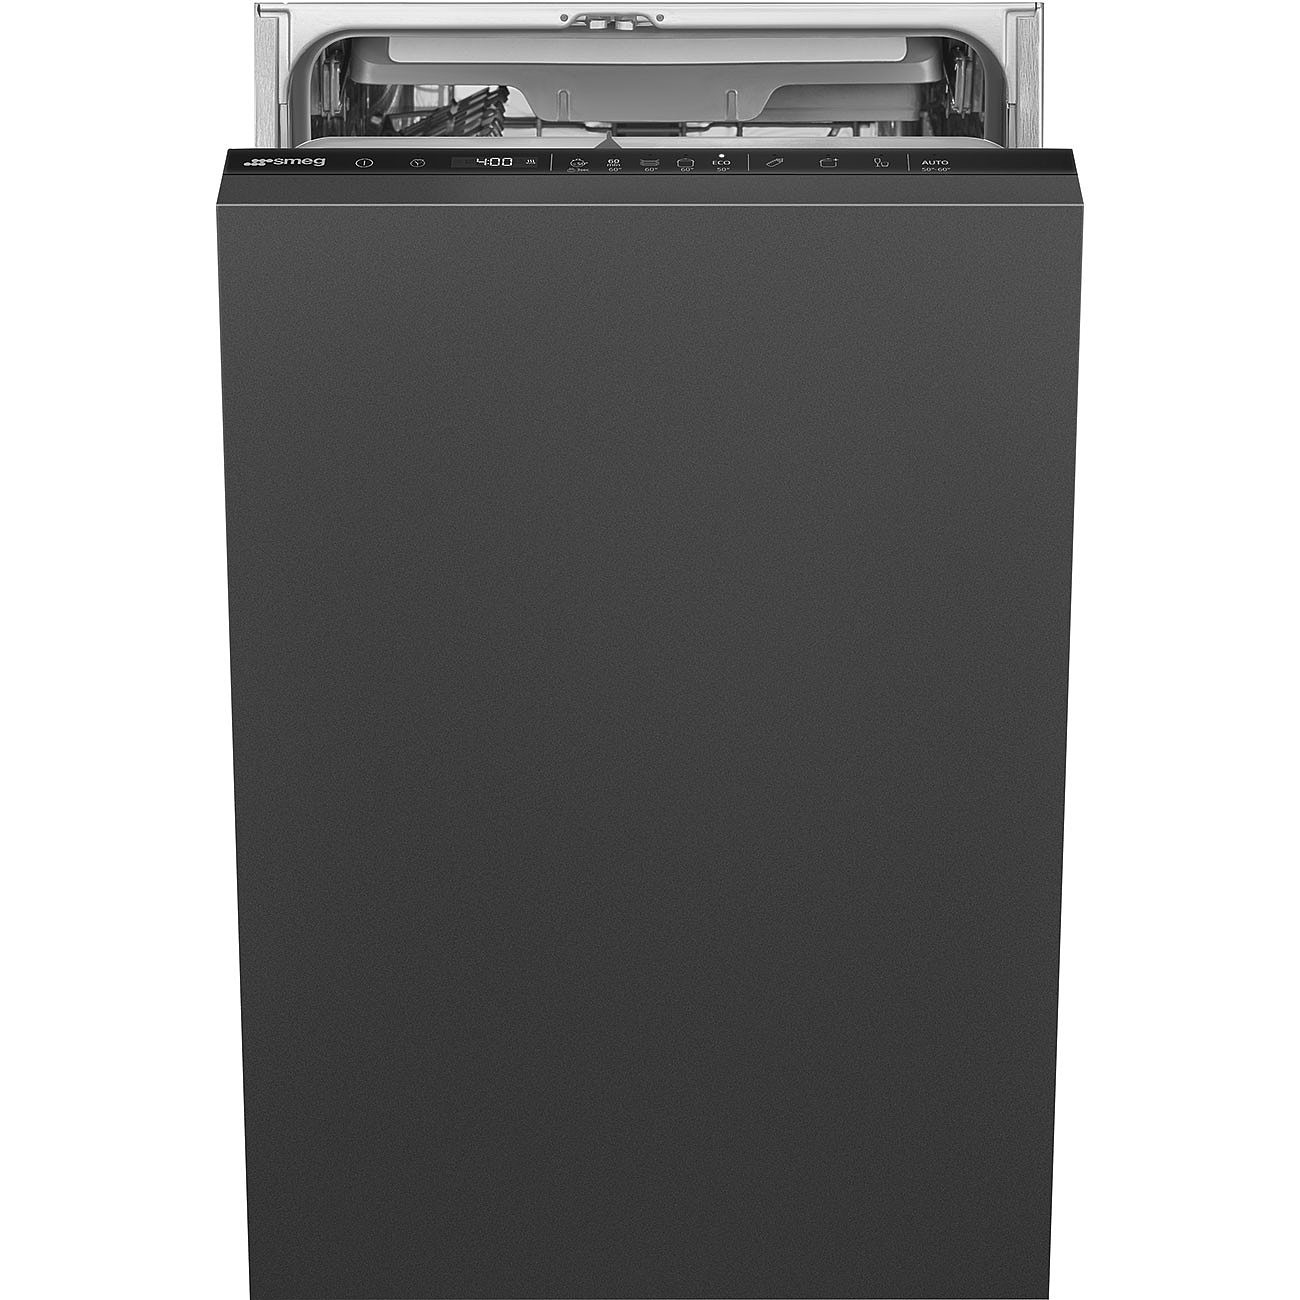 Smeg opvaskemaskine ST4533IN A/S